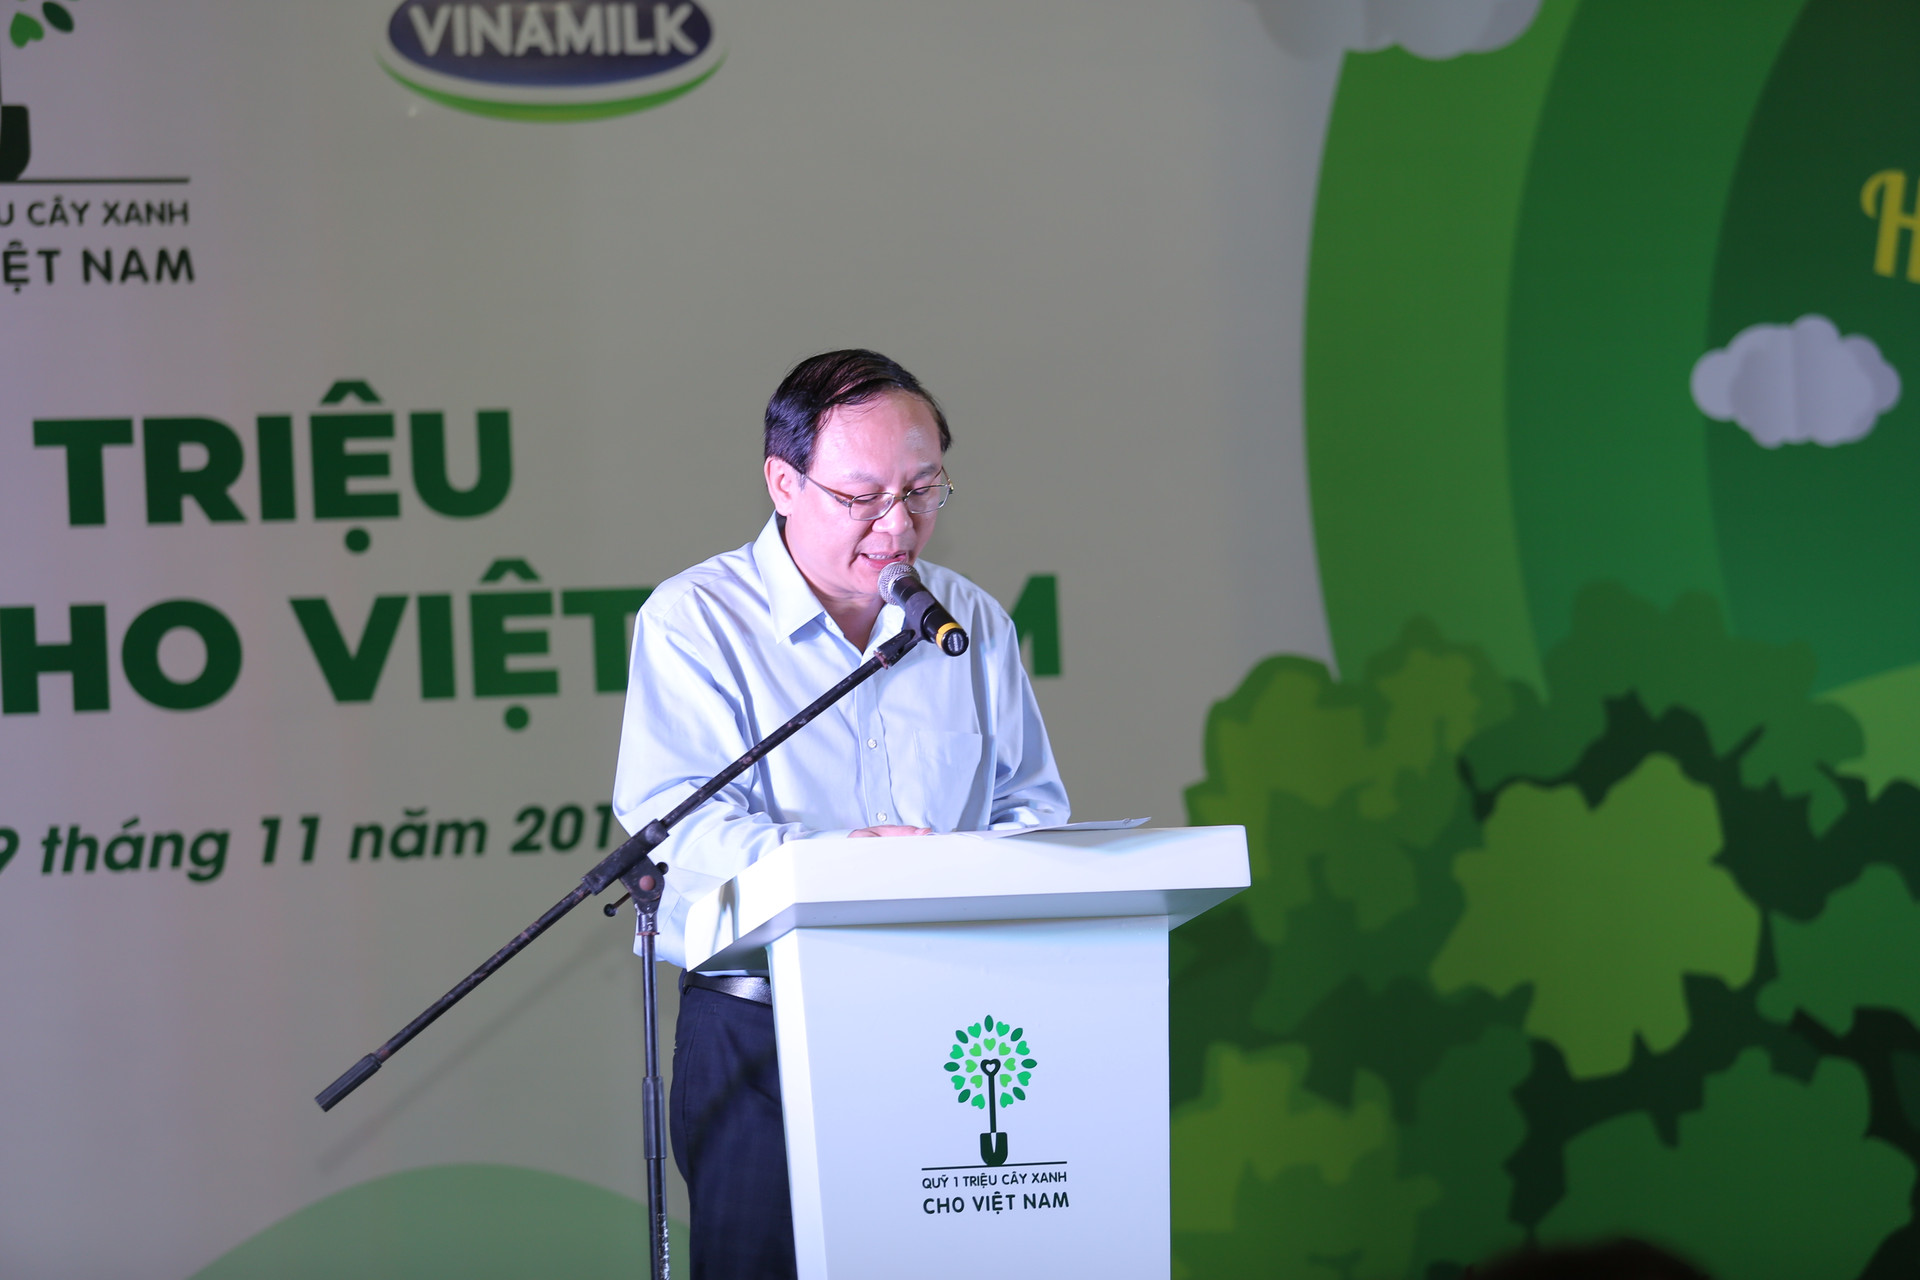 Vinamilk cùng quỹ 1 triệu cây xanh cho Việt Nam trồng cây